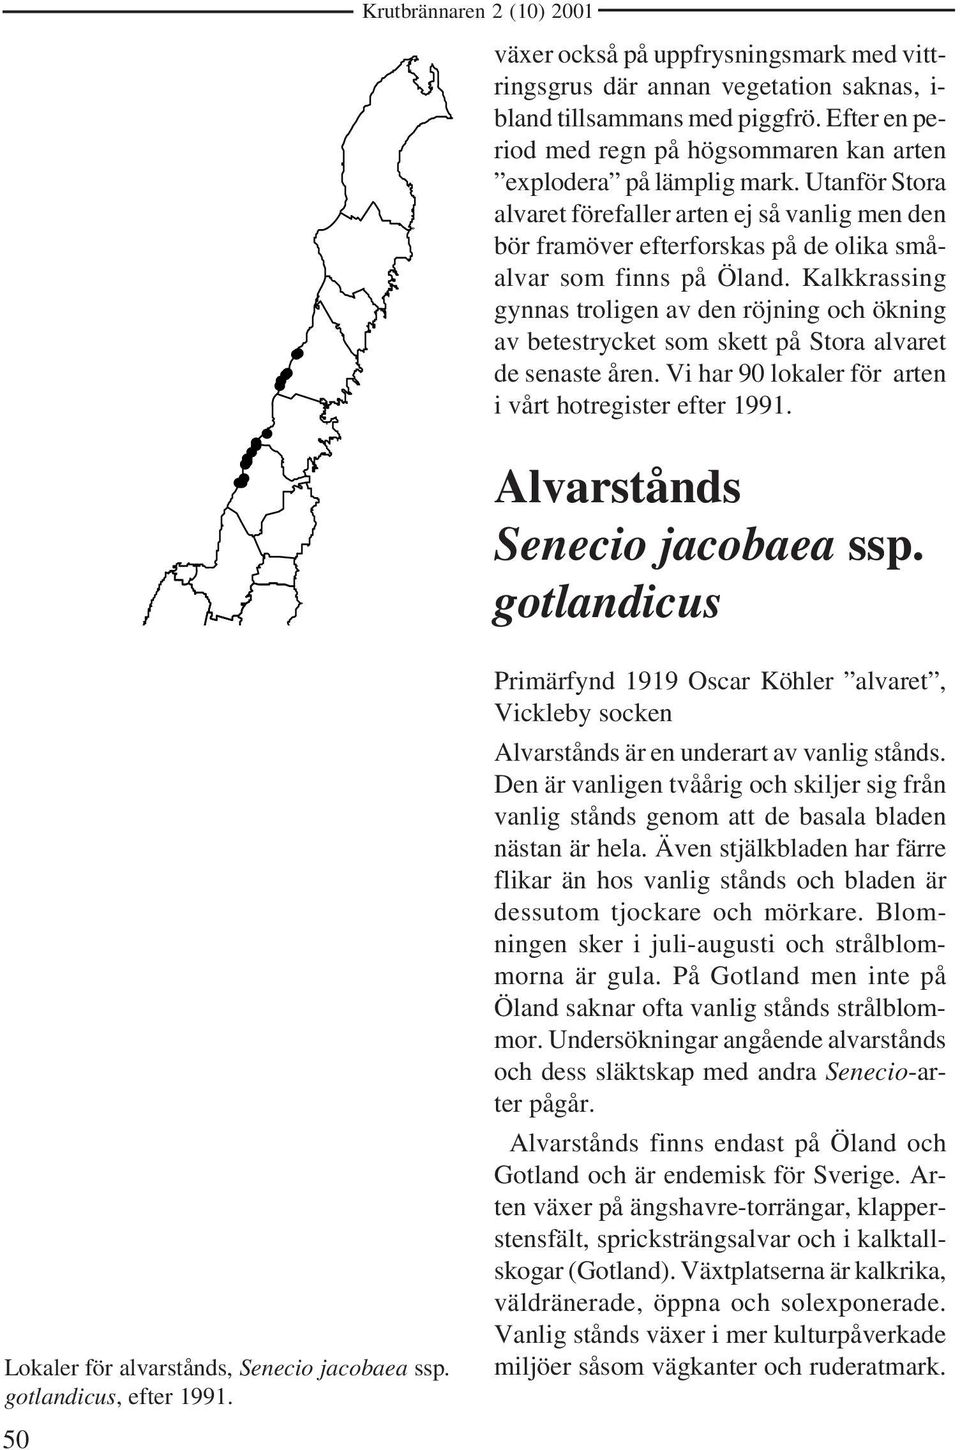 Utanför Stora alvaret förefaller arten ej så vanlig men den bör framöver efterforskas på de olika småalvar som finns på Öland.